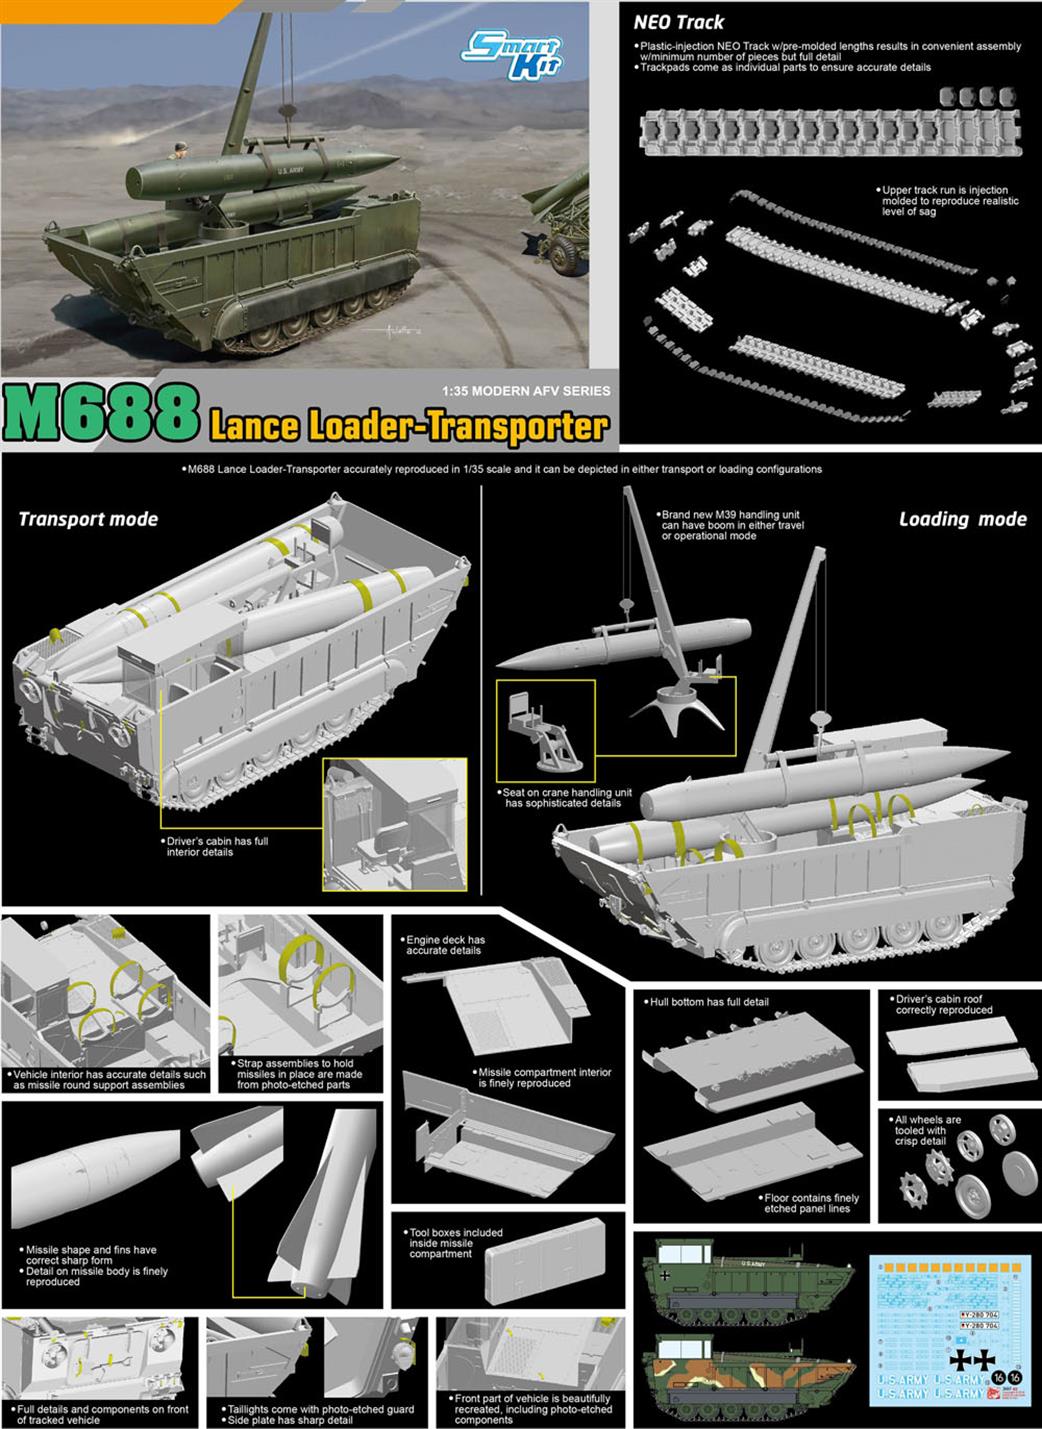 Dragon Models 1/35 3607 M688 Lance Loader Transporter Kit